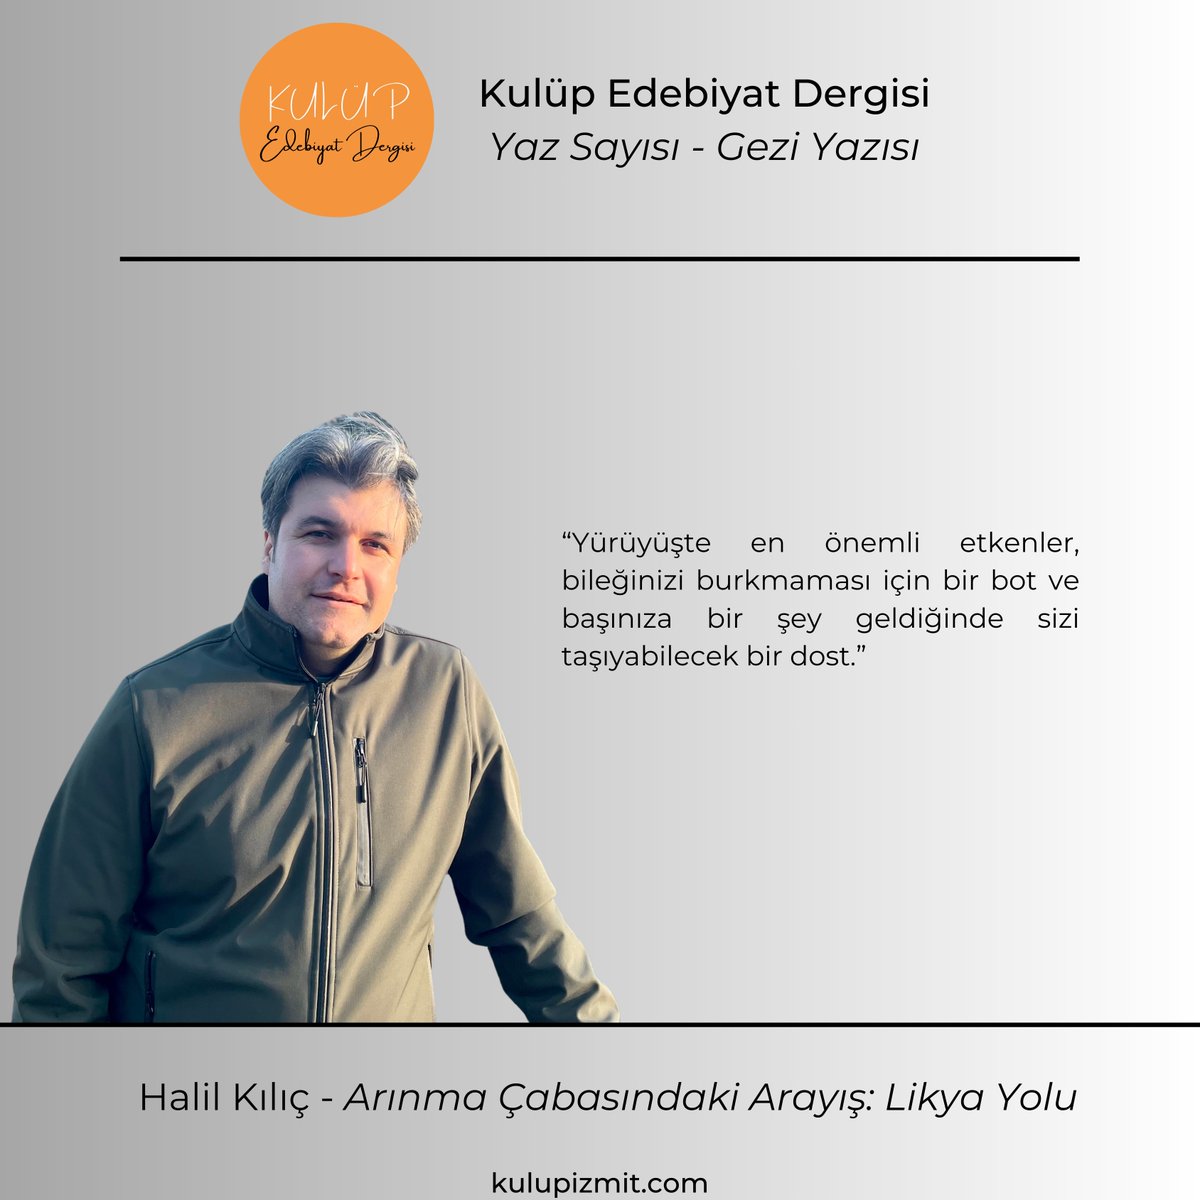 Halil Kılıç, 'Arınma Çabasındaki Arayış: Likya Yolu' gezi yazısı ile dergimizin yaz sayısında yer aldı. Dergimize link aracılığıyla ulaşabilirsiniz. kulupizmit.com/dergi/ @halilkilic41